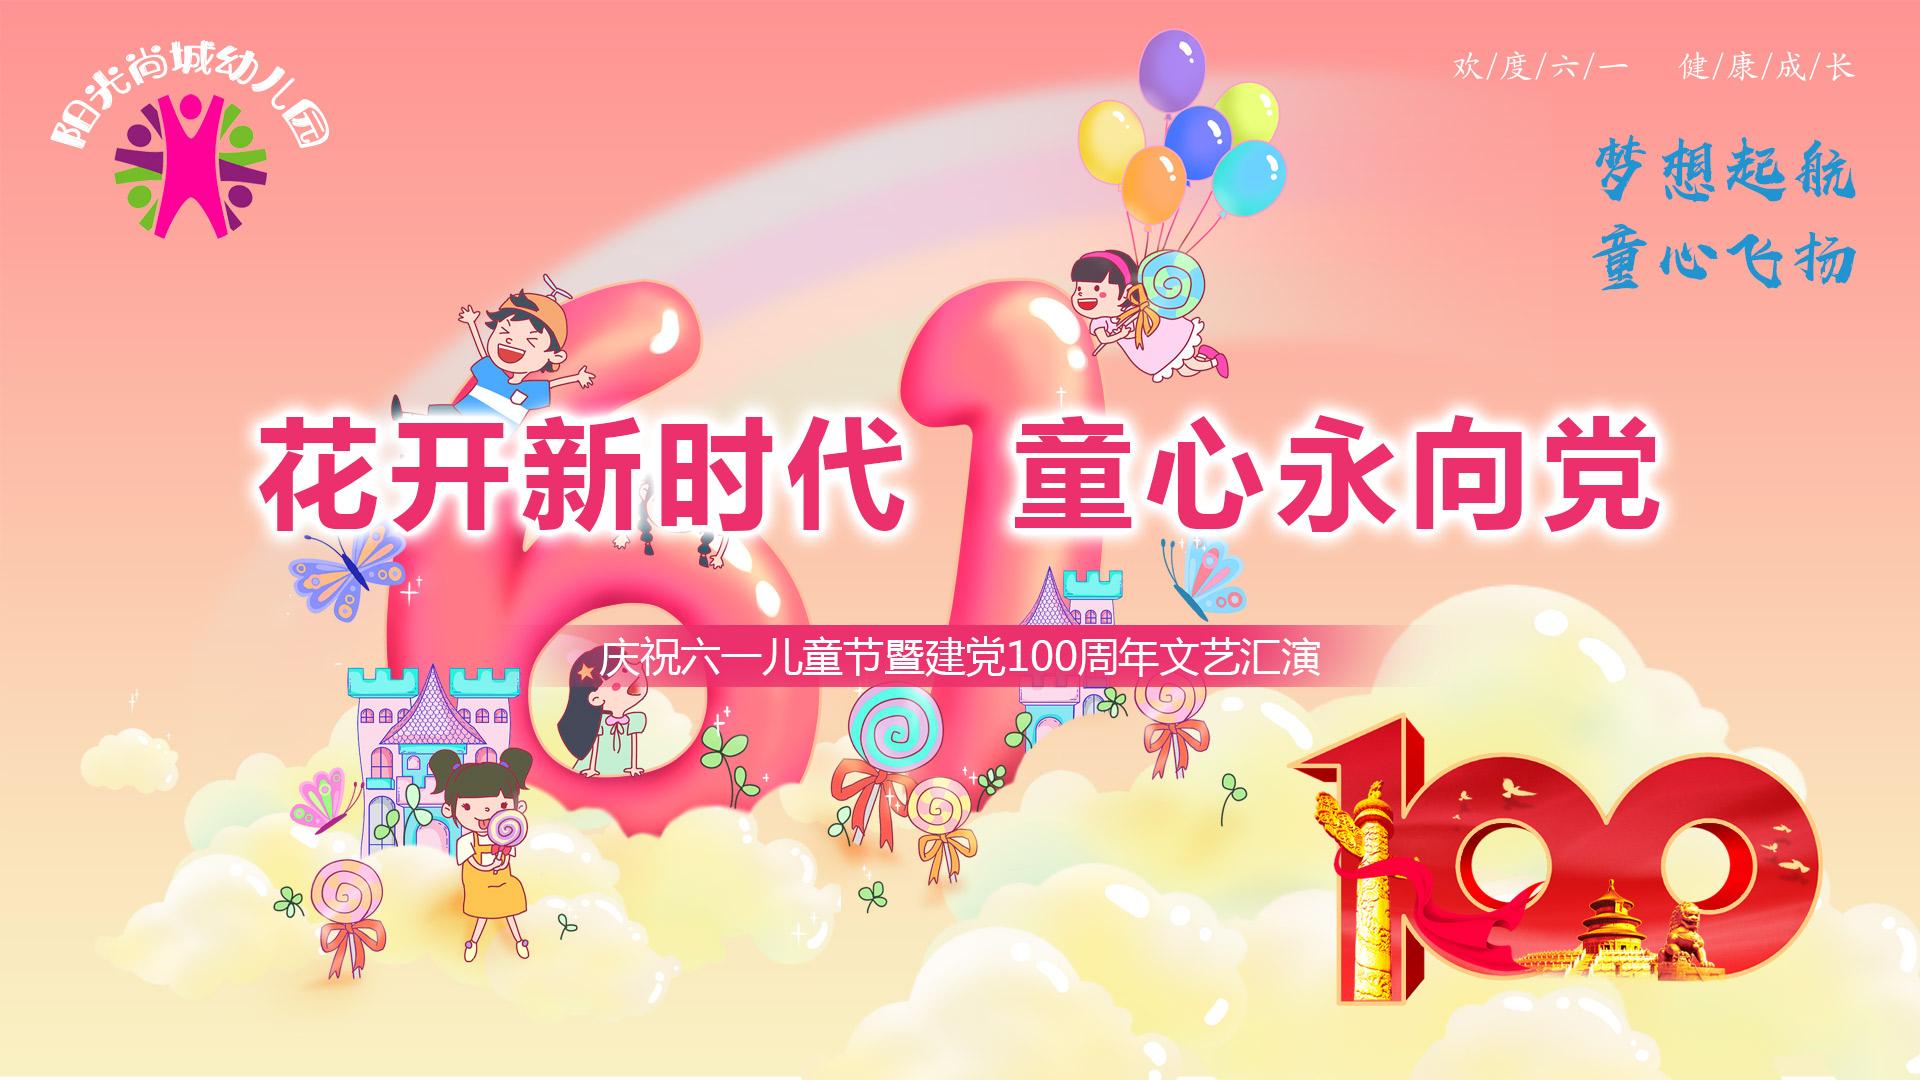 【阳光尚城幼儿园】庆祝六一儿童节暨建党100周年文艺汇演·上午场